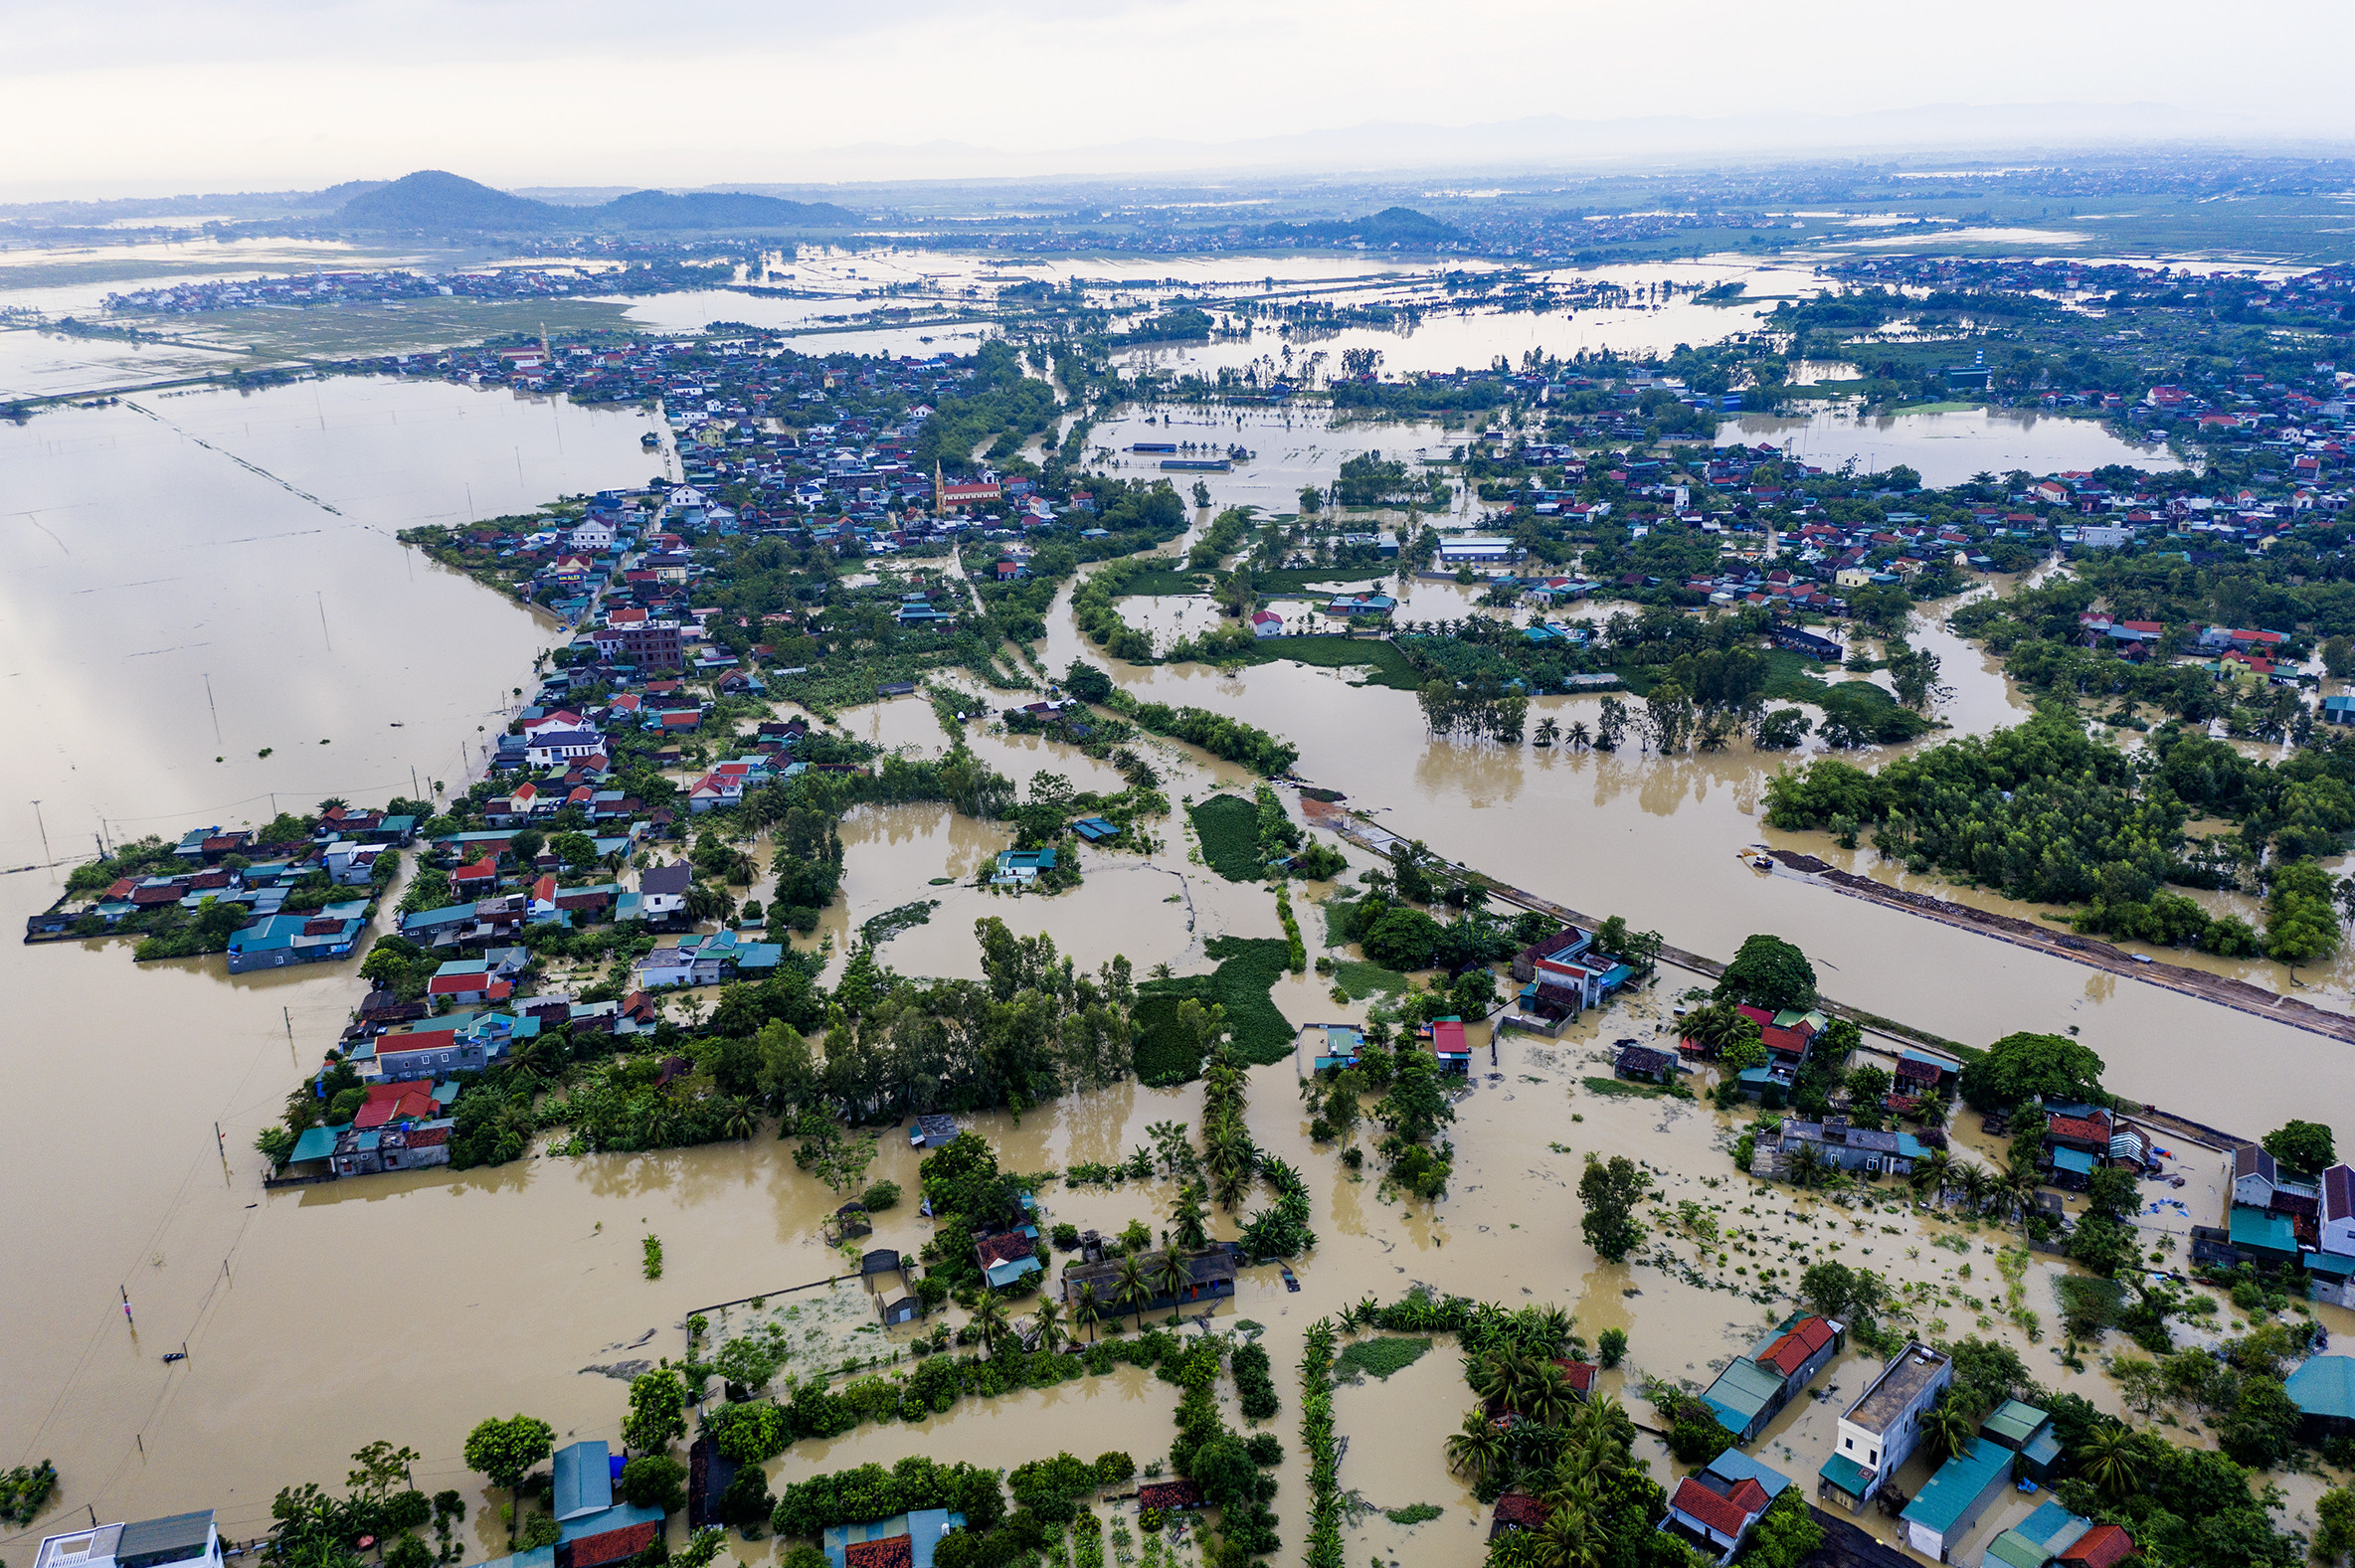 Sau cơn mưa lớn dài ngày, sáng 26 - 9 khu vực trung tâm huyện quỳnh lưu bị chia cắt bởi nước lũ lên nhanh. 